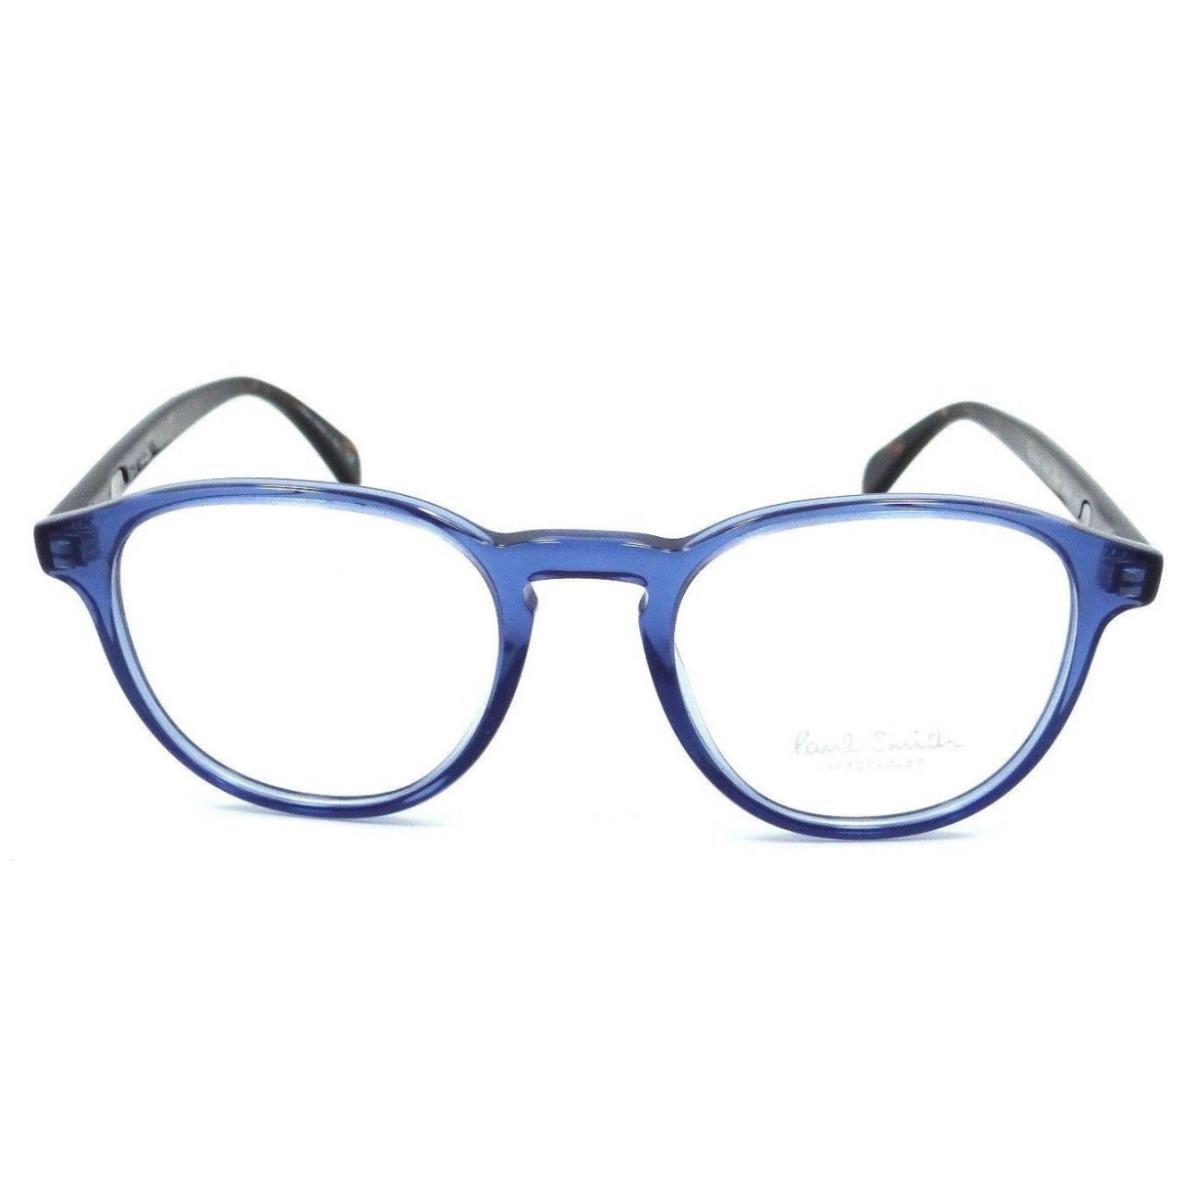 Paul Smith Rx Eyeglasses PM 8263-1542 Blue W/demo Lens 48mm